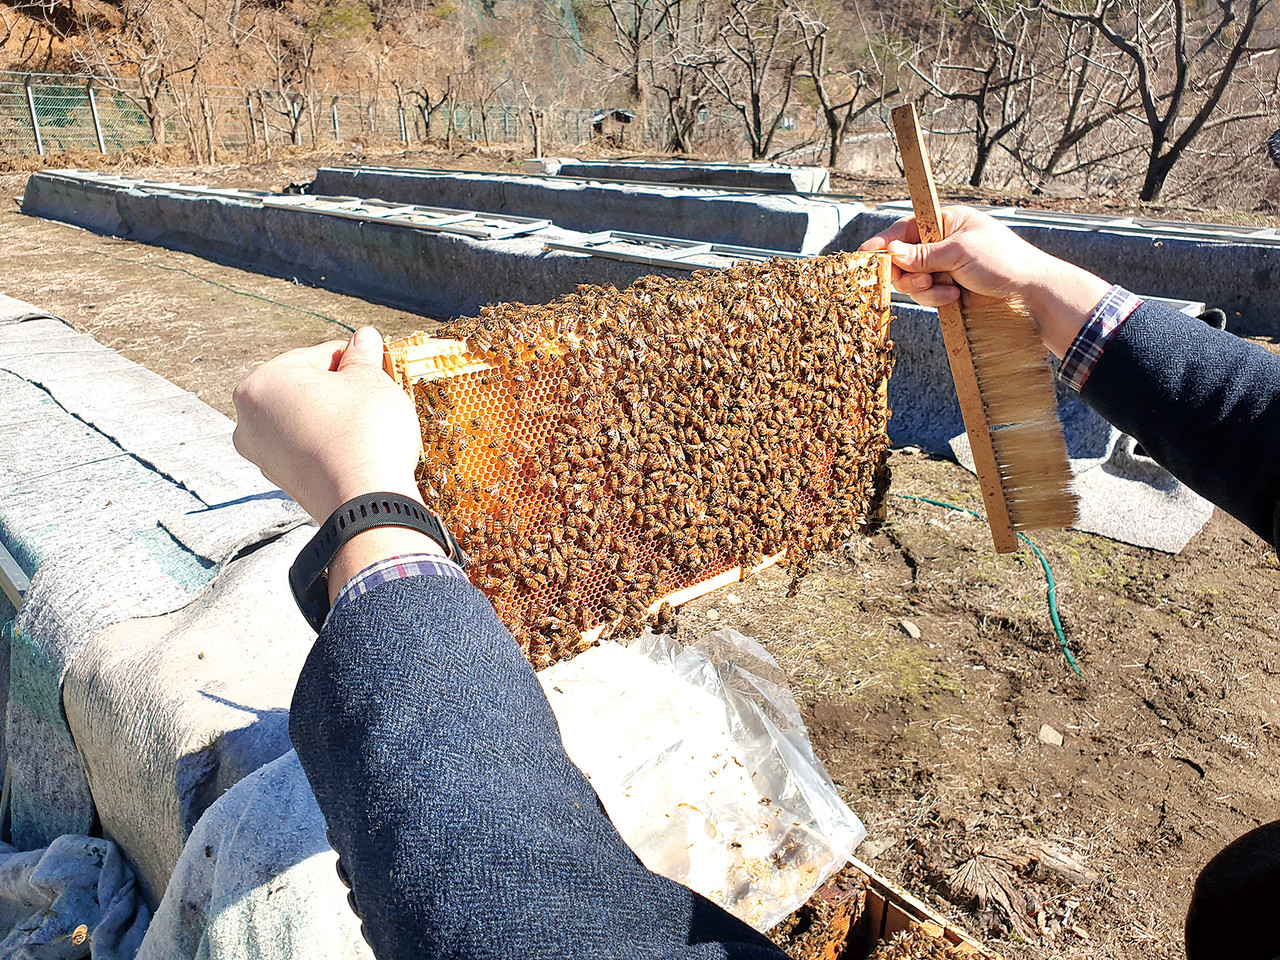 꿀벌 폐사를 방지하기 위해선 꿀벌응애류를 적기 방제해야 한다. 